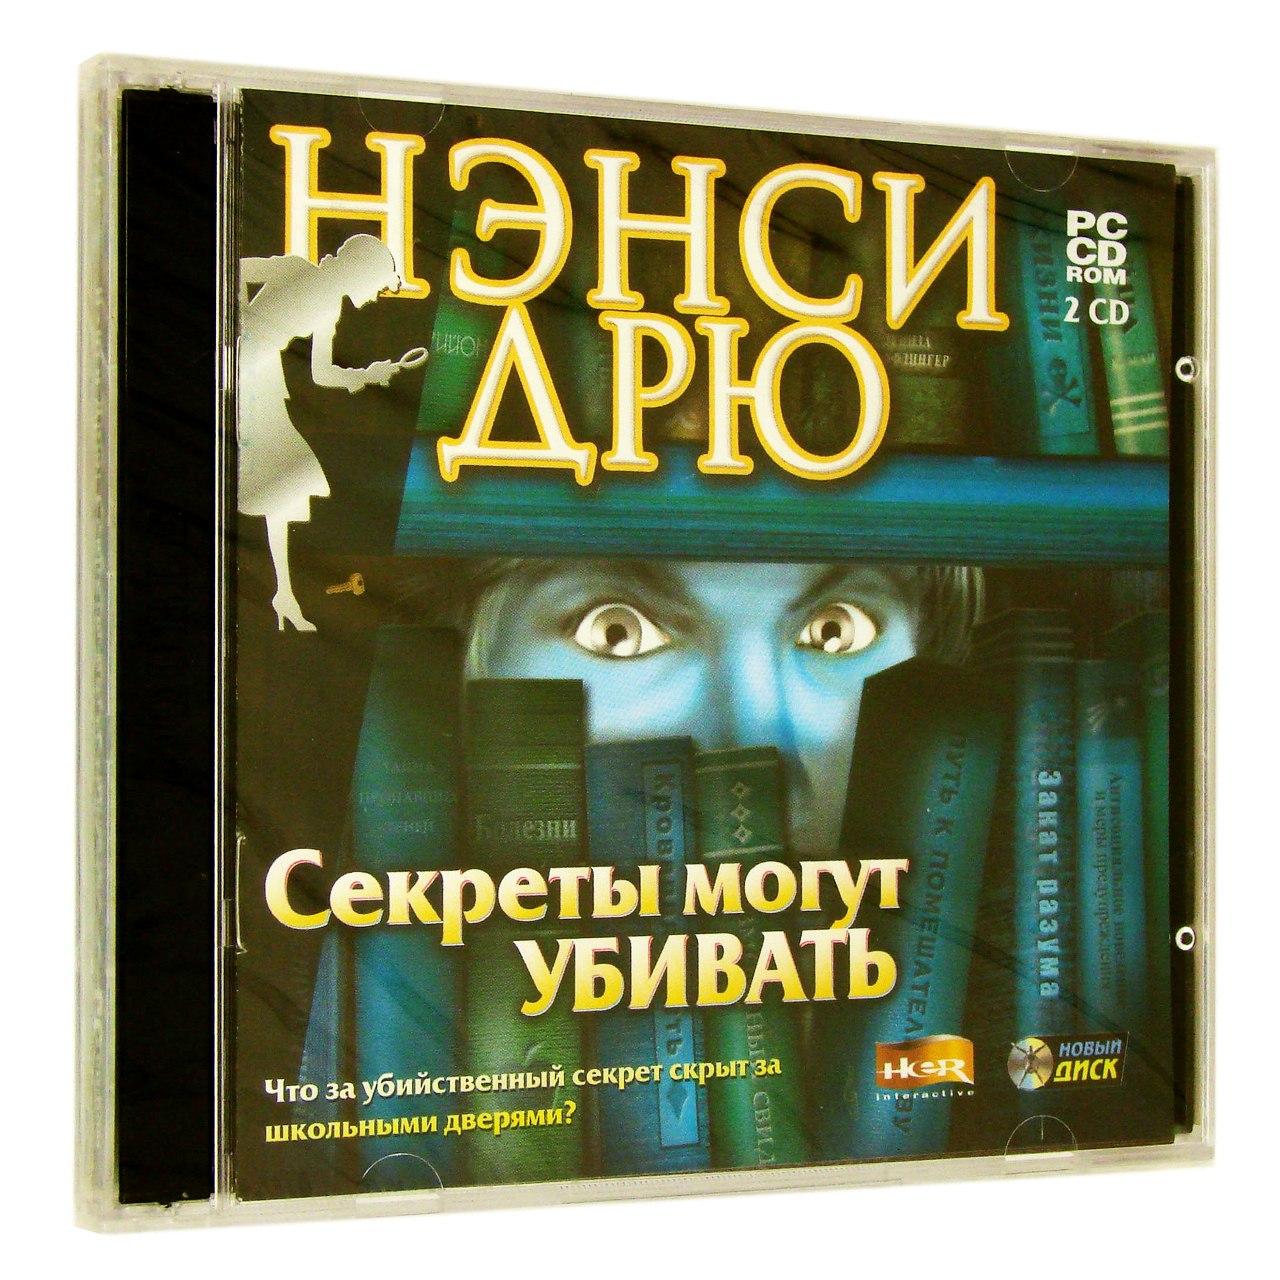 Компьютерный компакт-диск Нэнси Дрю: Секреты могут убивать (ПК), фирма "Новый диск", 2CD